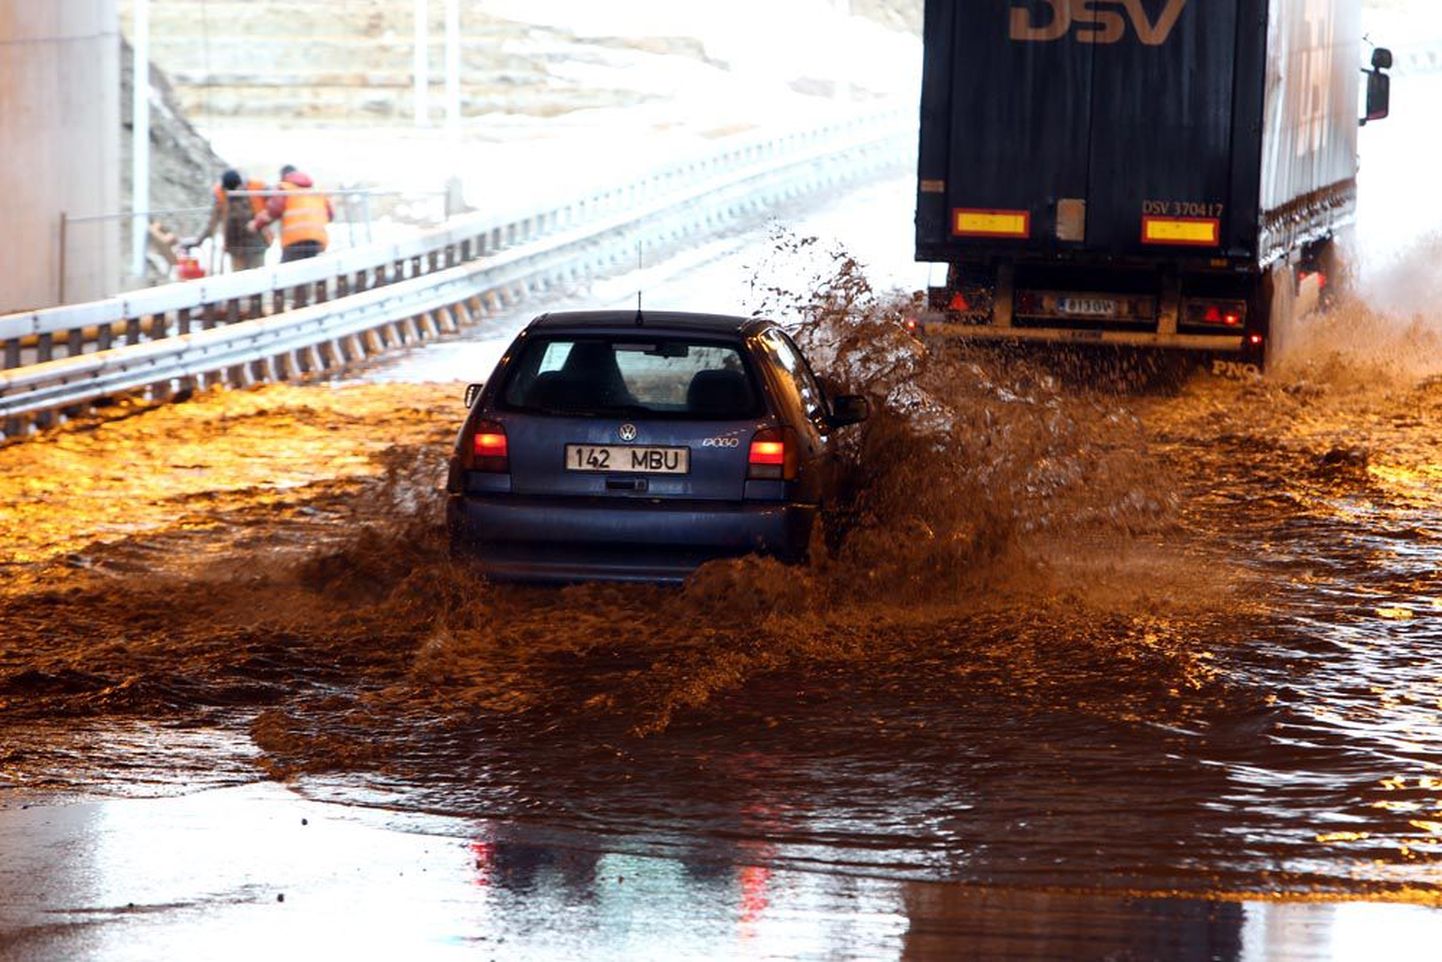 Jaanuari lõpus avatud Tallinna-Narva maantee Loo ja Maardu vahelise teelõigu Iru elektrijaama poole suunduvas tunnelis lainetab selline vesi, et väiksematel sõiduautodel on oht sinna toppama jääda.